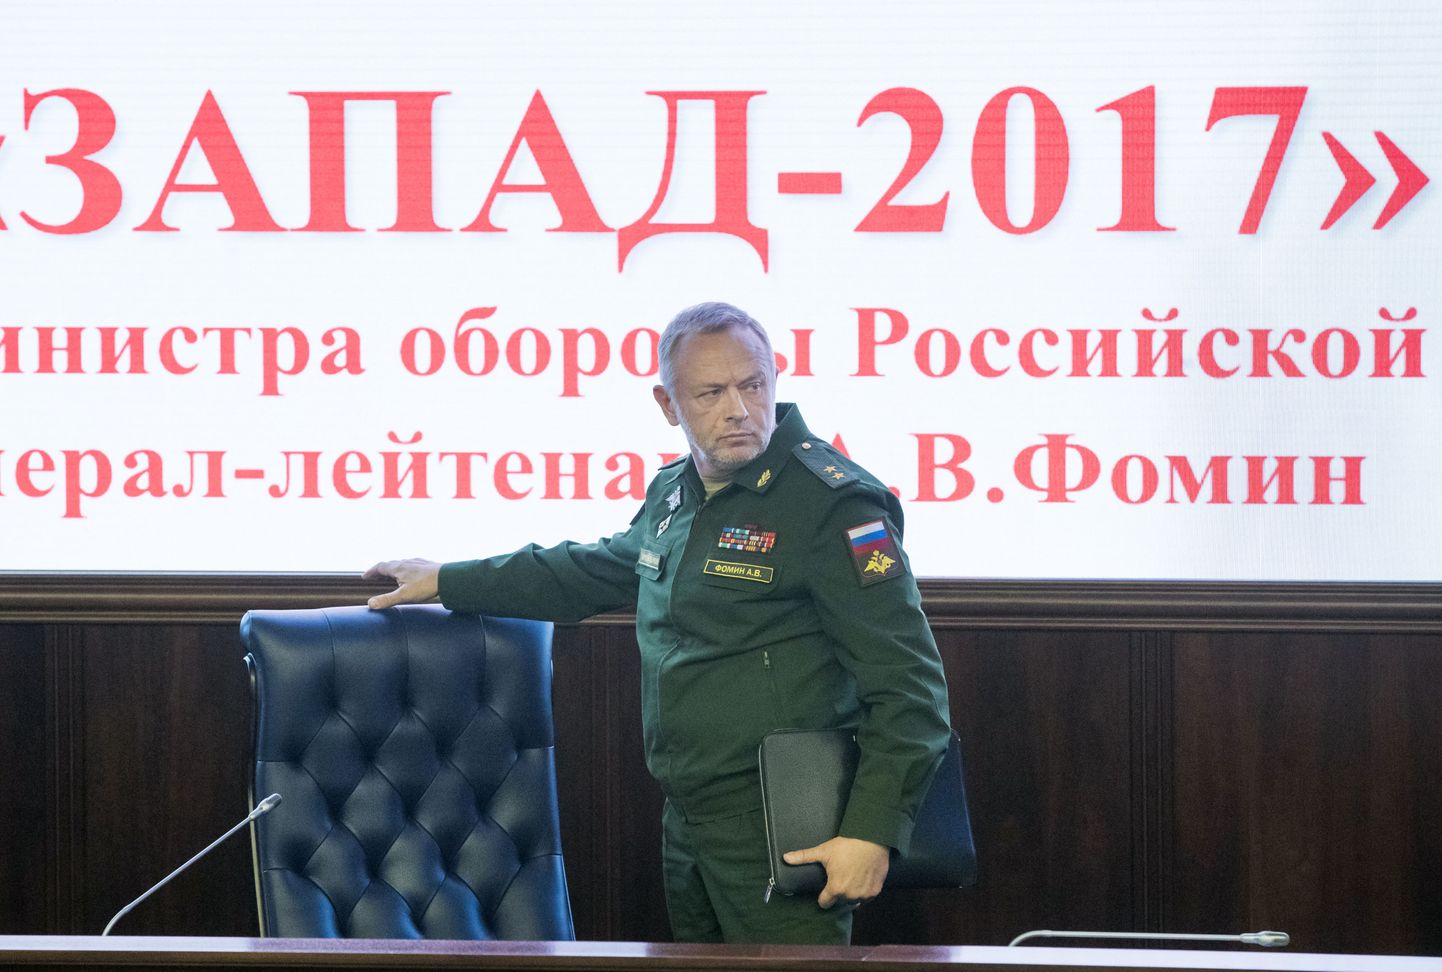 Asekaitseminister Aleksandr Fomin